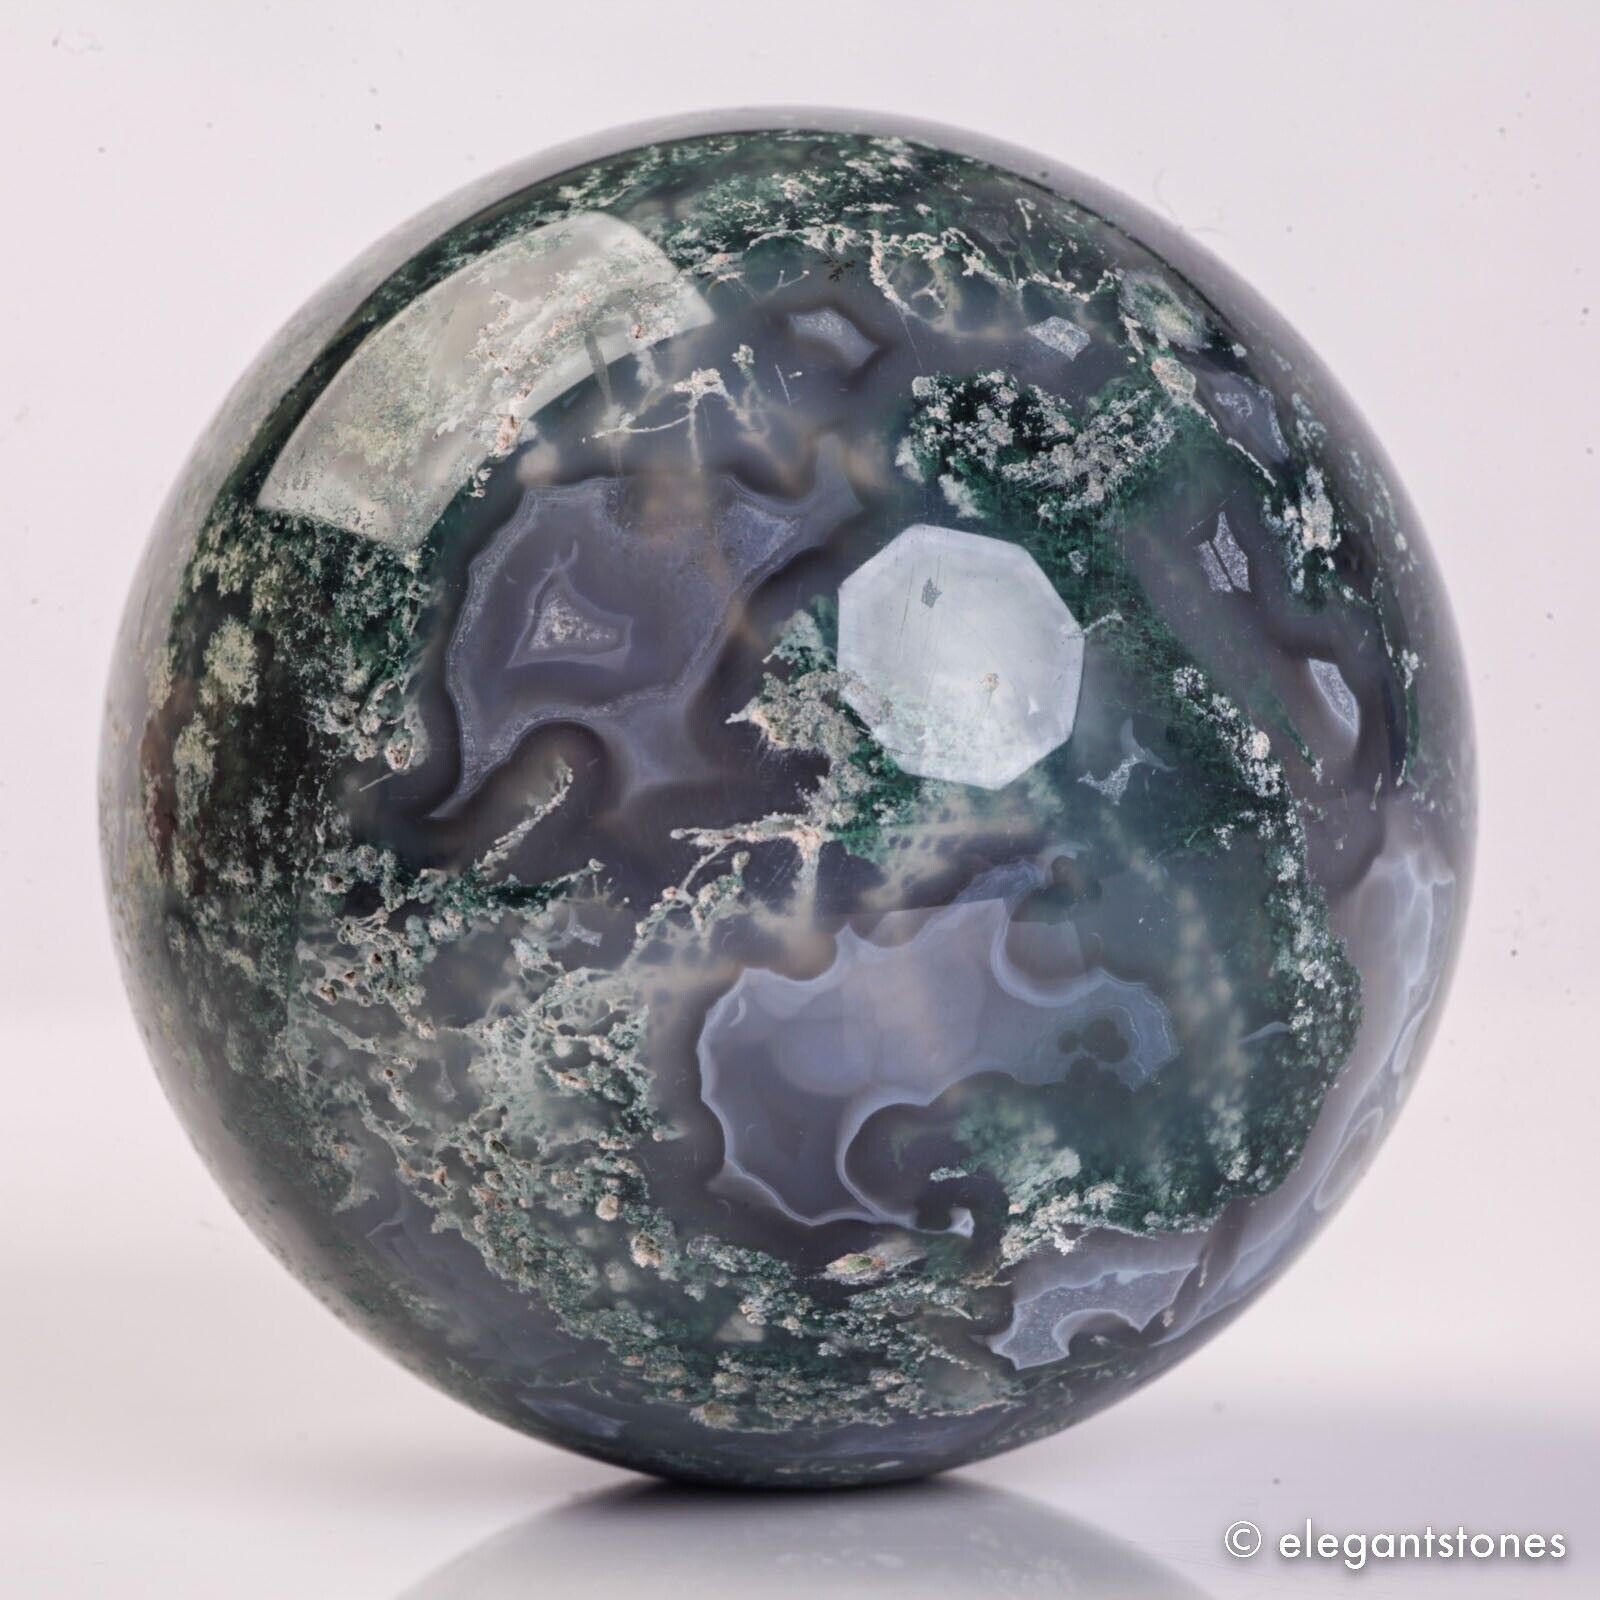 417g 67mm Natural Green Moss Agate Crystal Geode Sphere Quartz Healing Ball